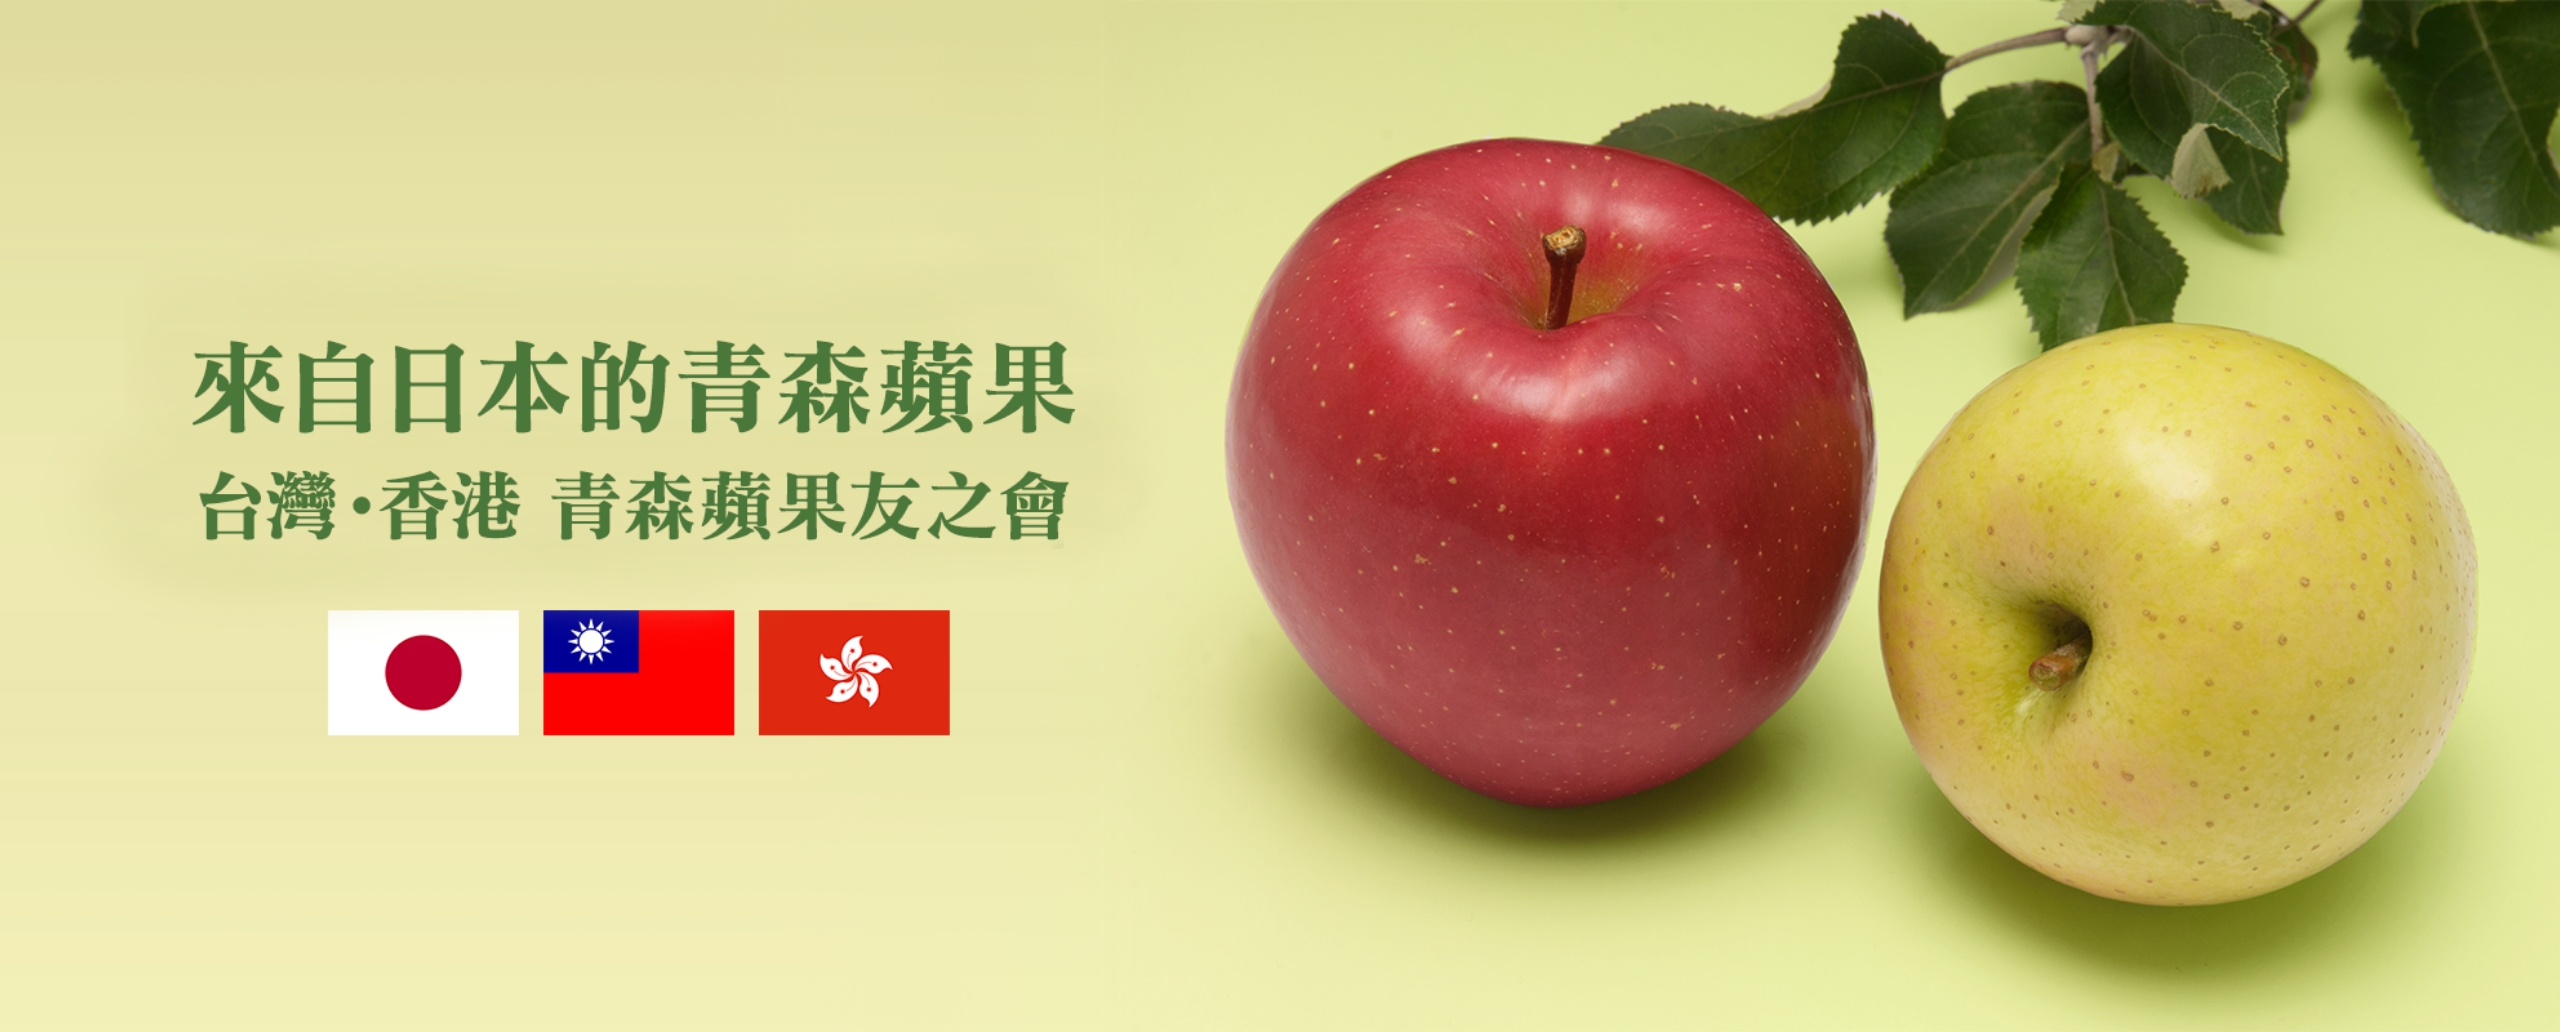 台灣‧香港 青森蘋果之友協會